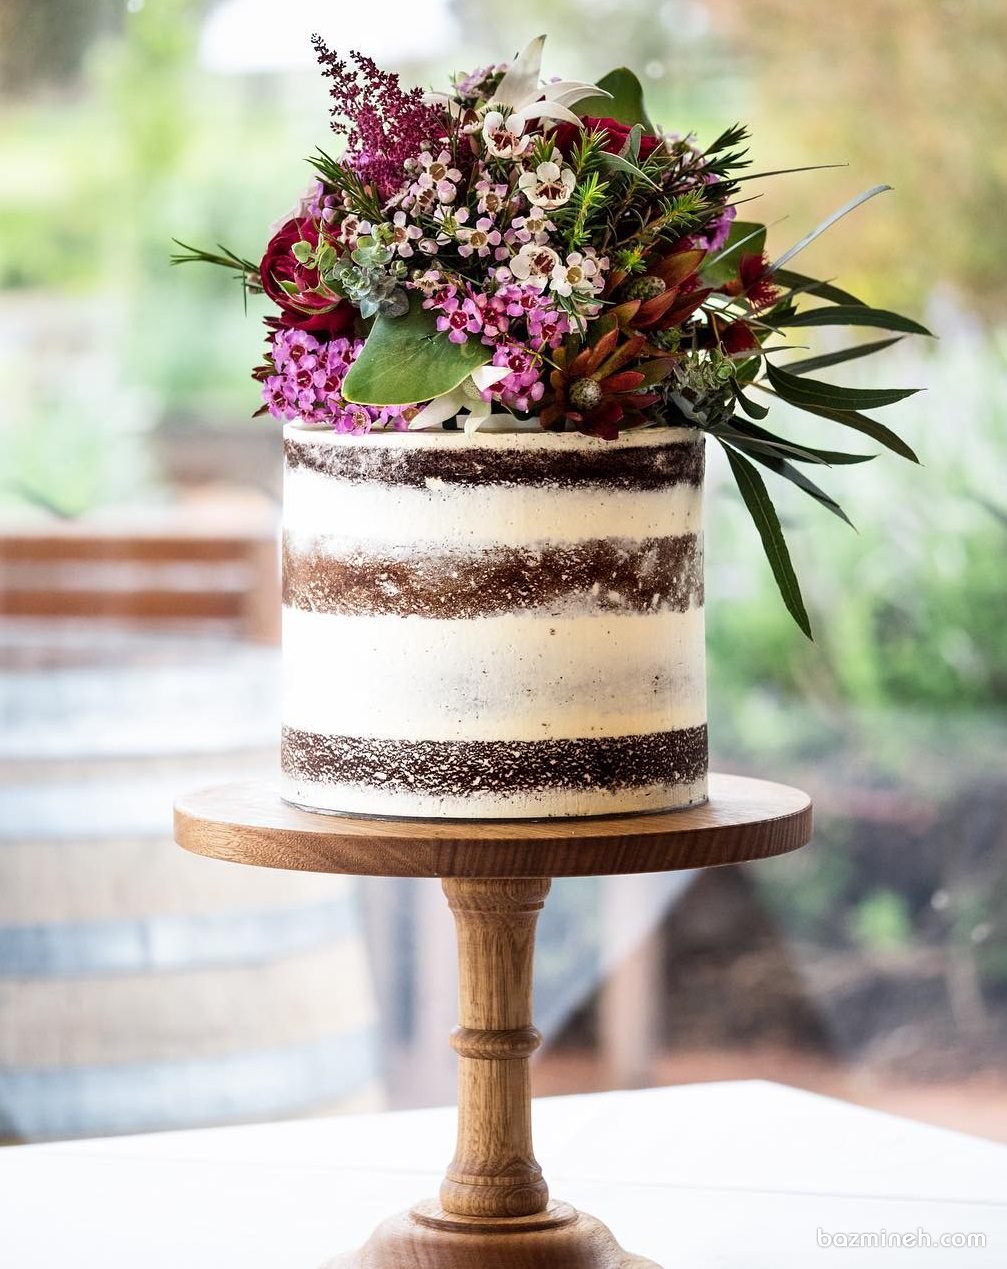 کیک بدون روکش جشن تولد یا سالگرد ازدواج با تزیین گلهای وحشی به سبک بوهو